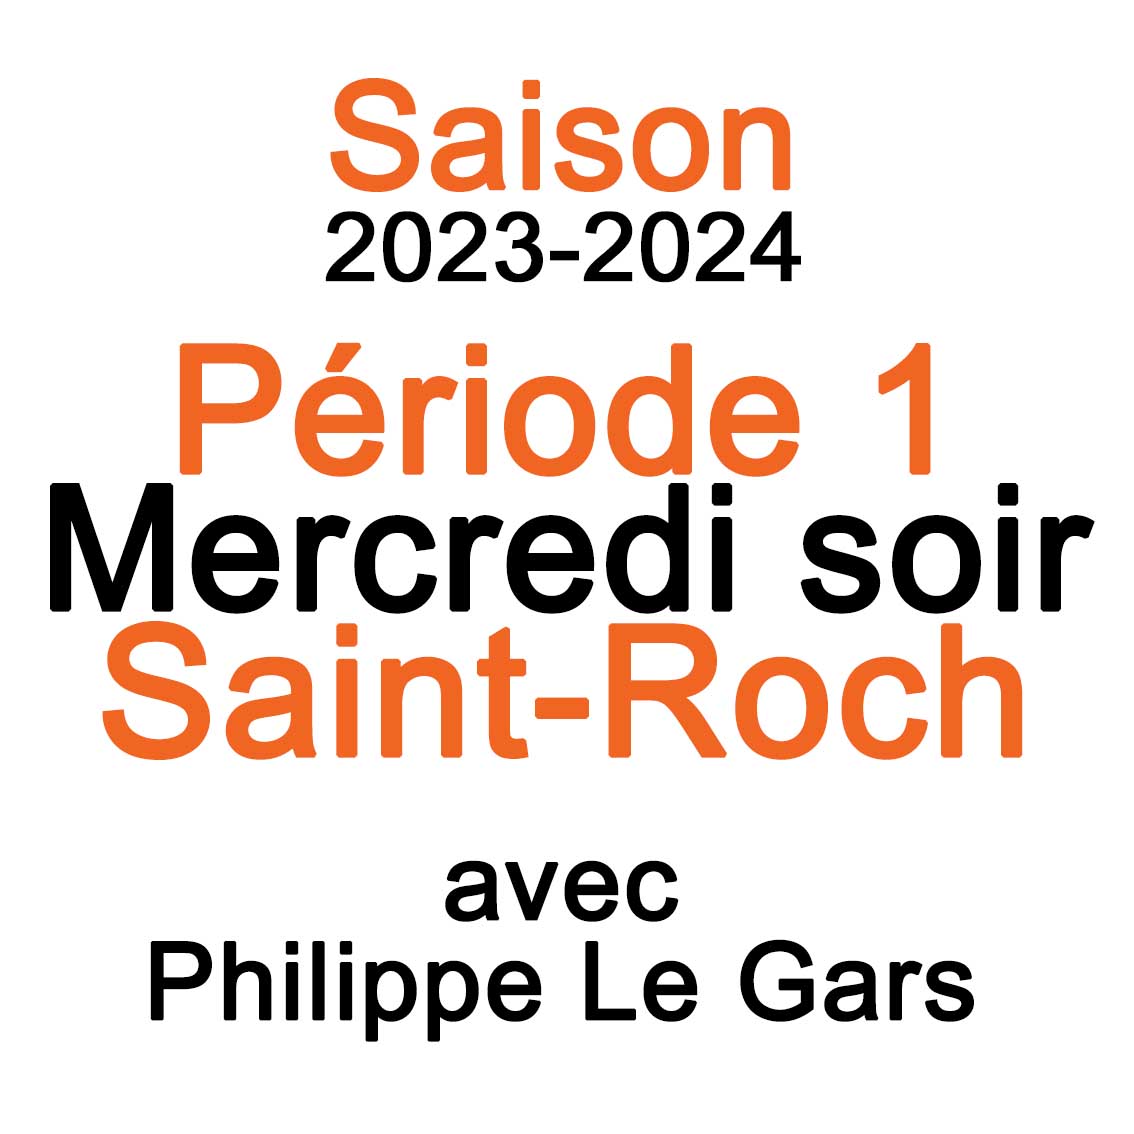 2023-2024-Mercredi-Saint-Roch